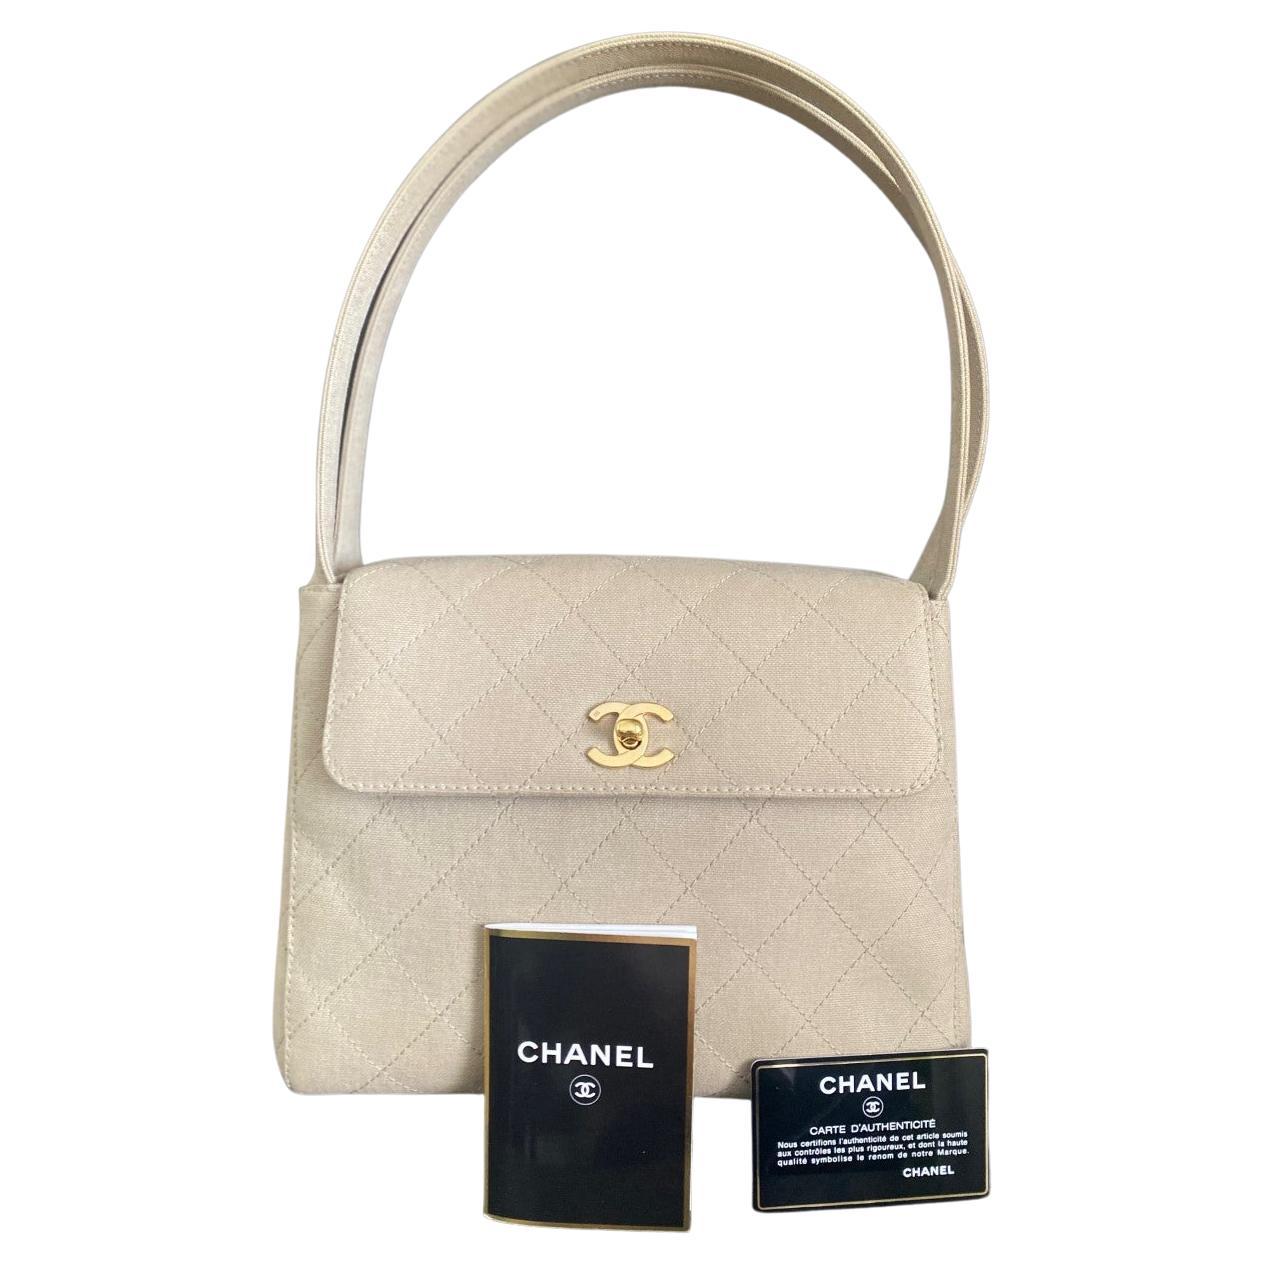 Chanel vintage años 90 bolso bandolera acolchado kelly top handle beige nude lino